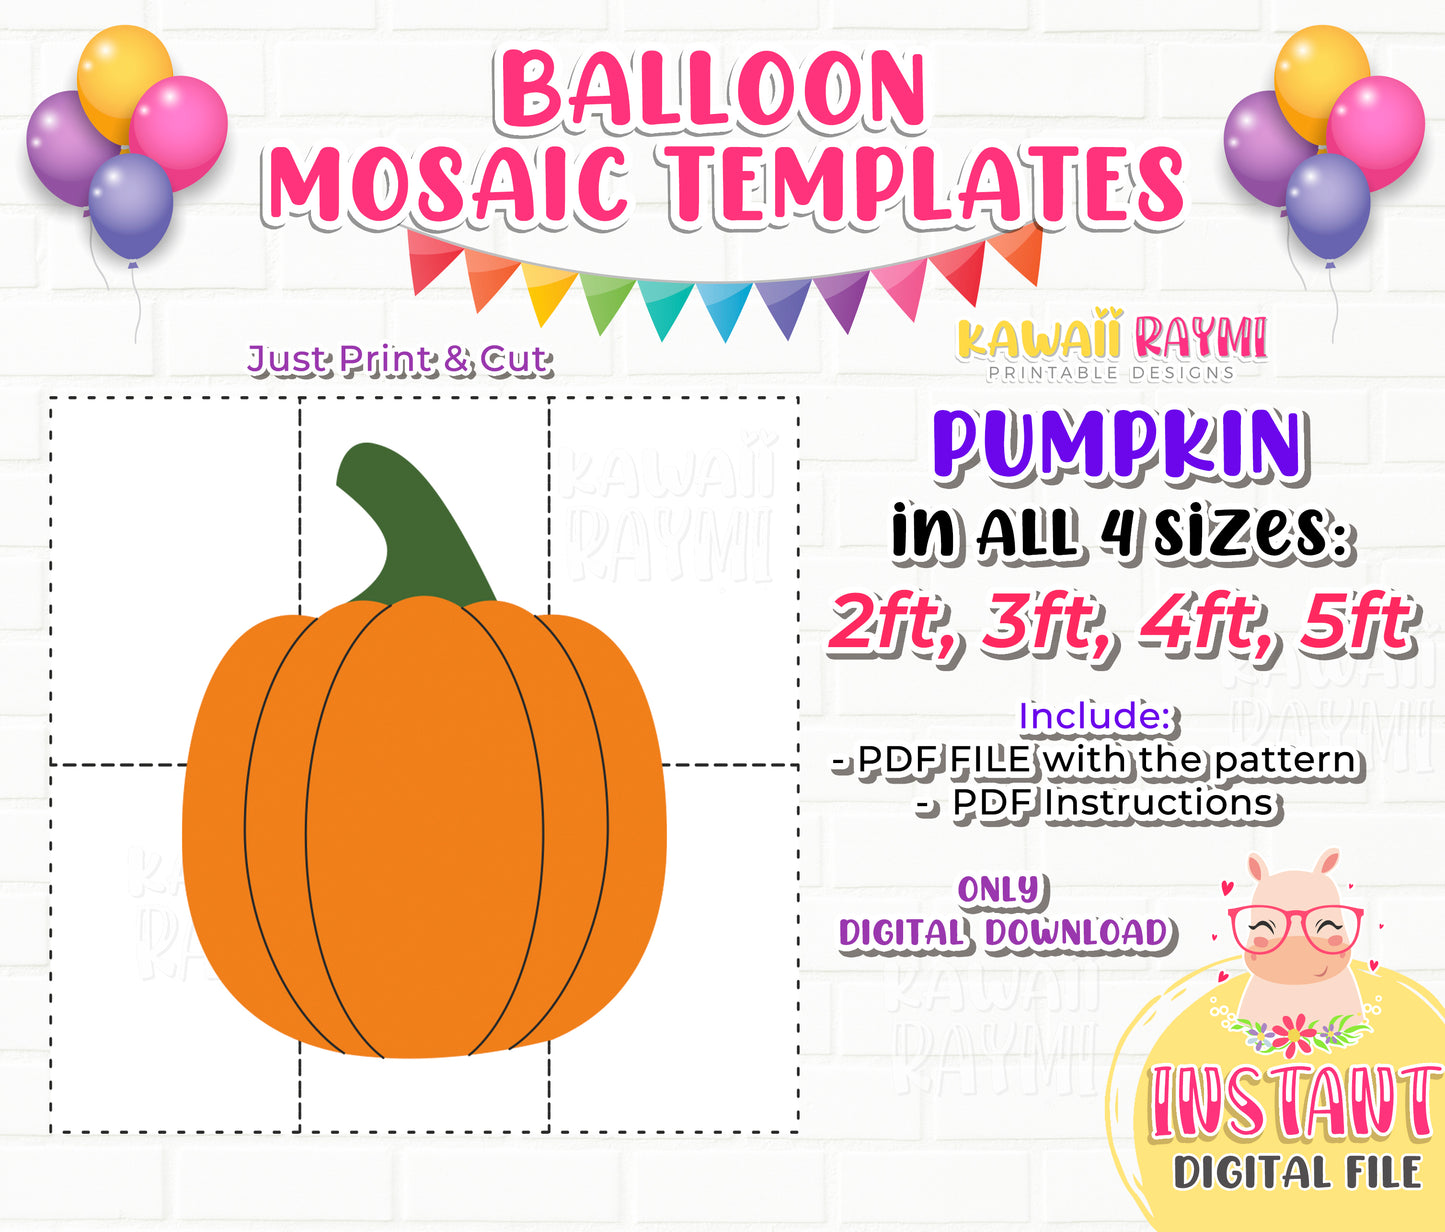 Pumpkin from Balloons, Mosaic from Balloons, Halloween Decor, DIY Pumpkin, Mosaic Template, 2ft, 3ft, 4ft, 5ft, DIY Decor, Pumpkin Decor